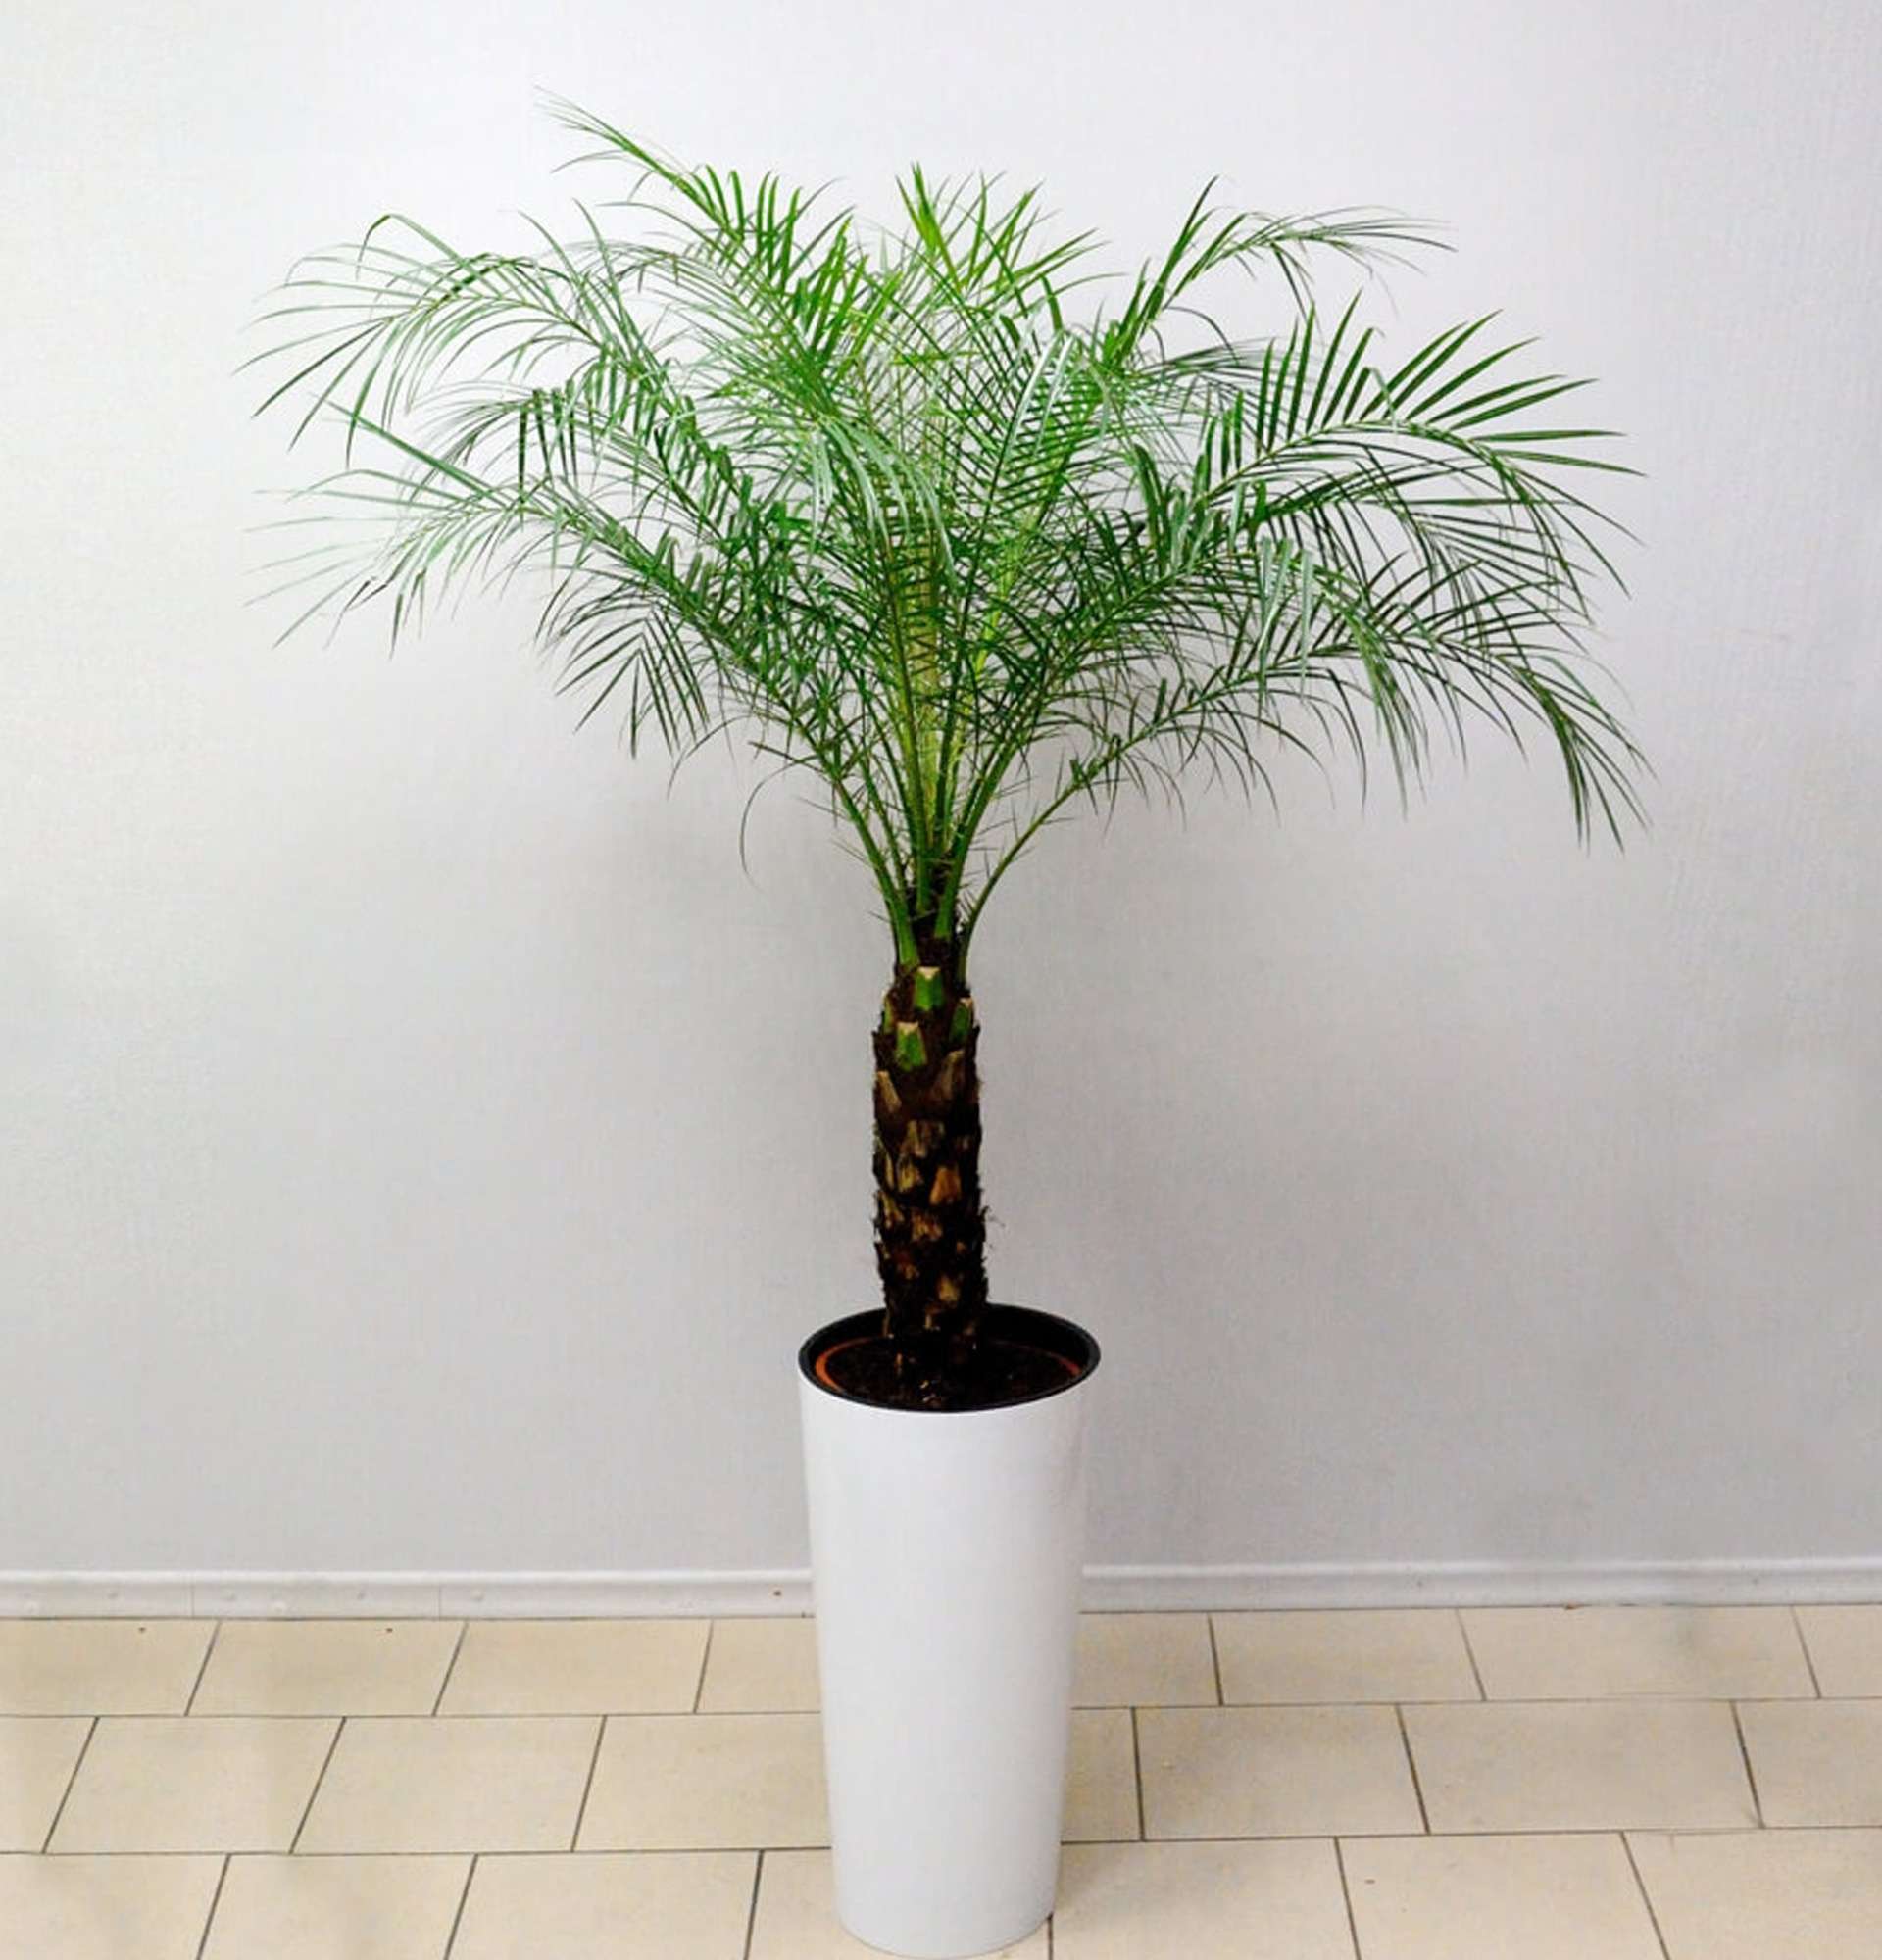 Домашняя финиковая пальма: выращивание с видео и фото | Фатерра